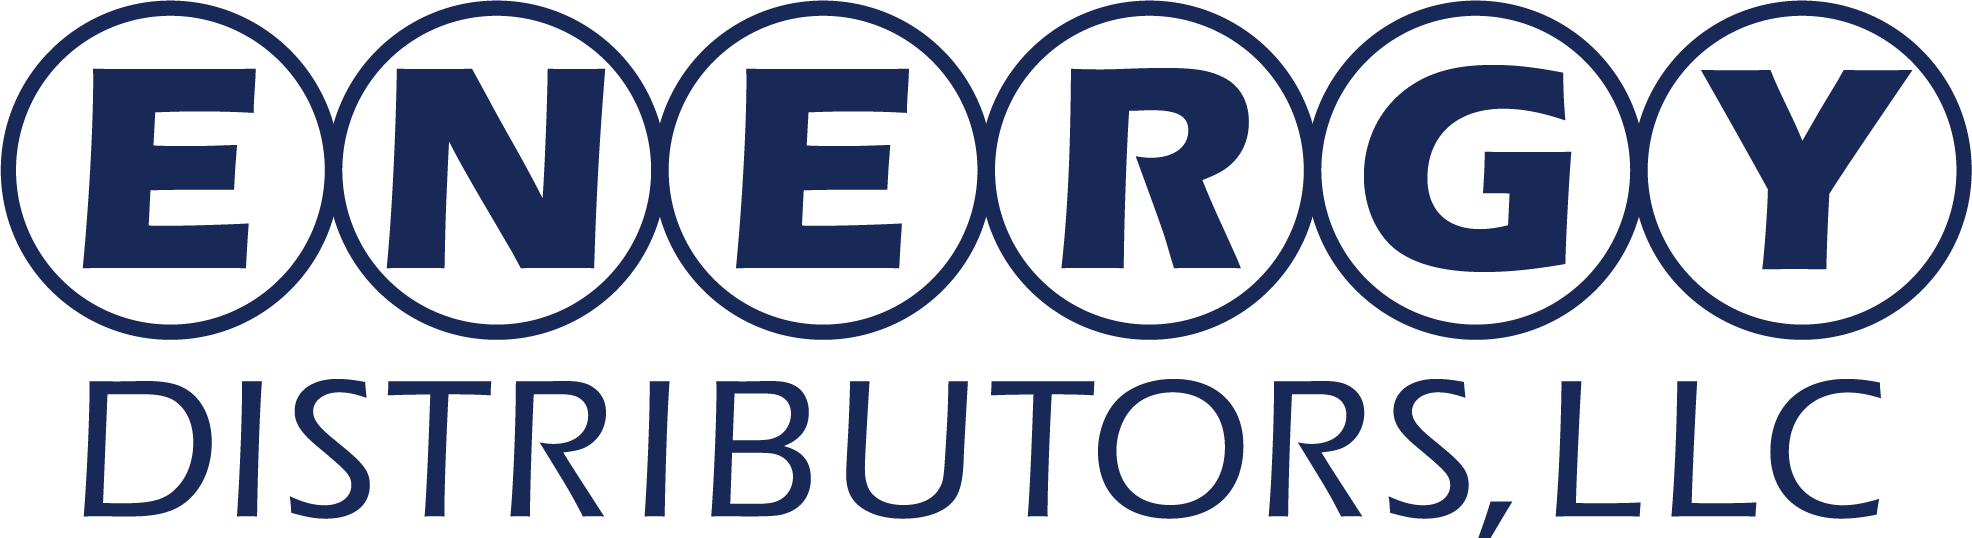 Energy Distributor logo